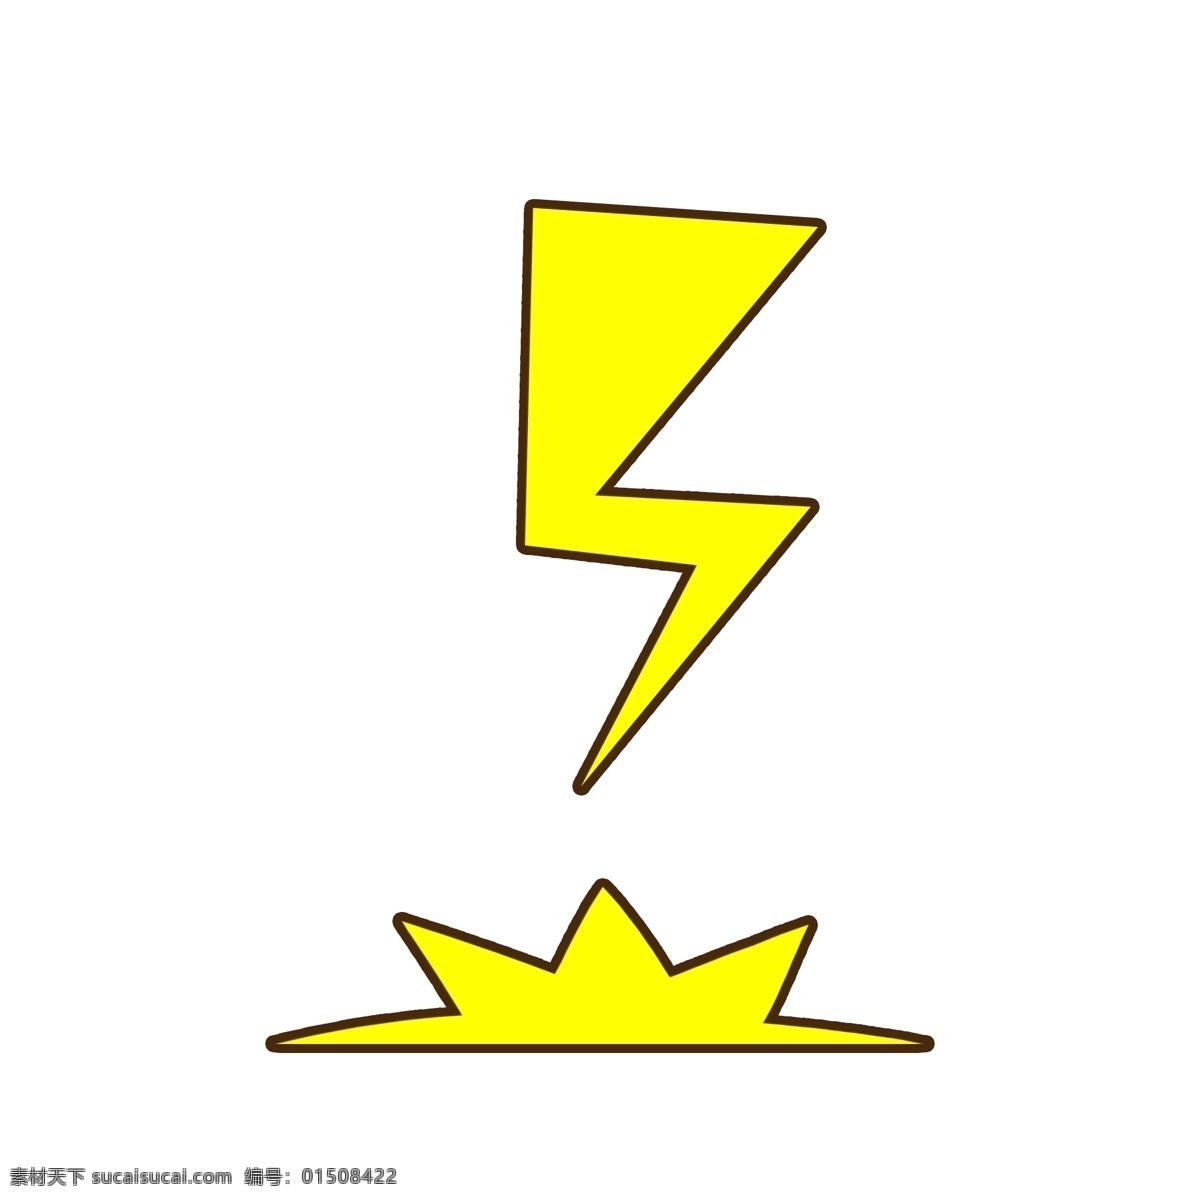 卡通 黄色 闪电 天气 雷电 可爱 打雷 矢量 手绘 元素 落地雷电